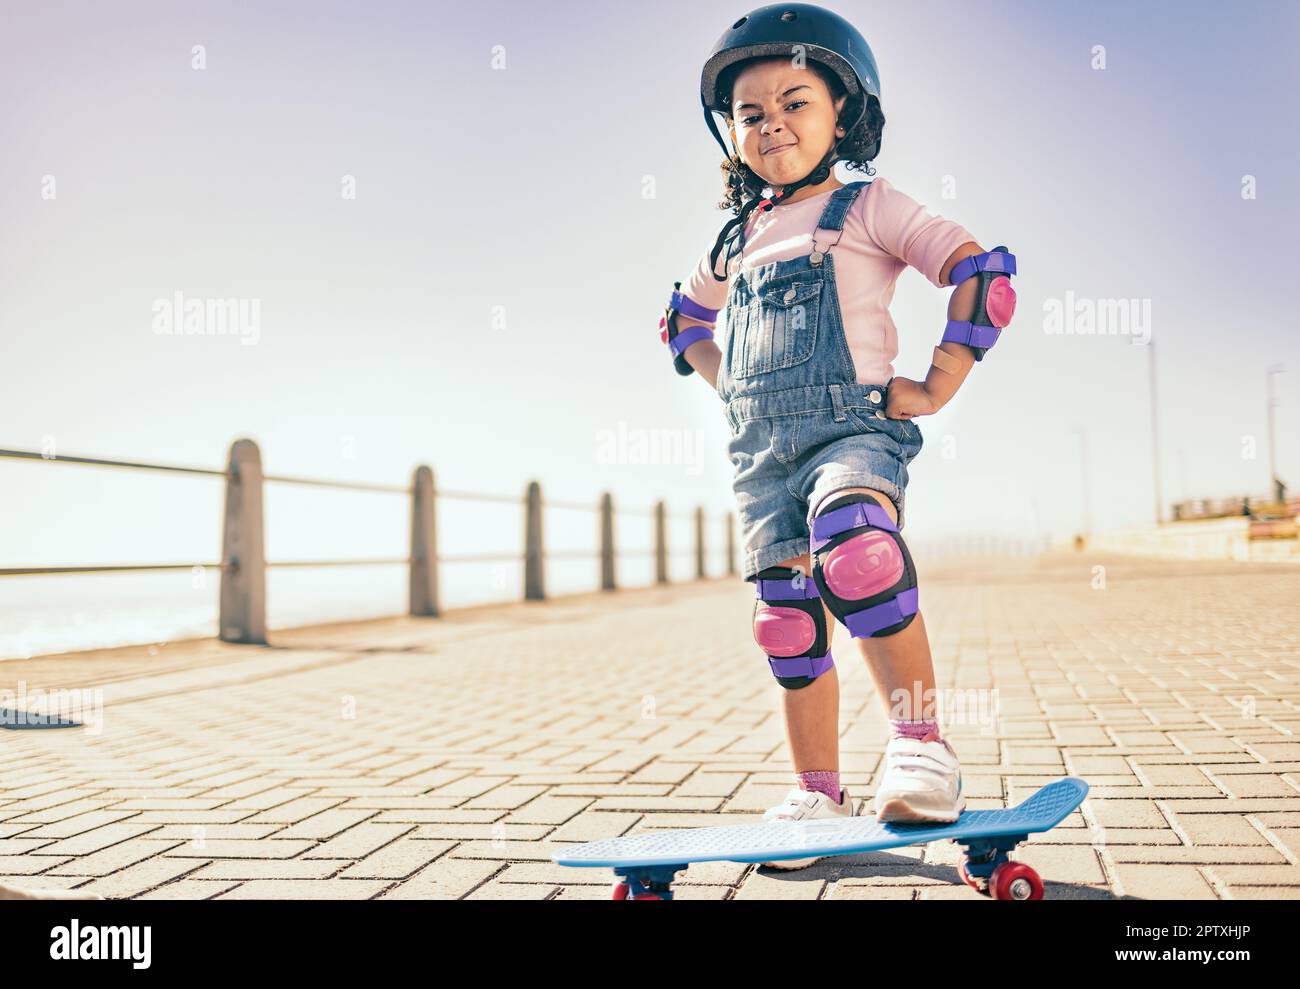 Girl power through skateboarding